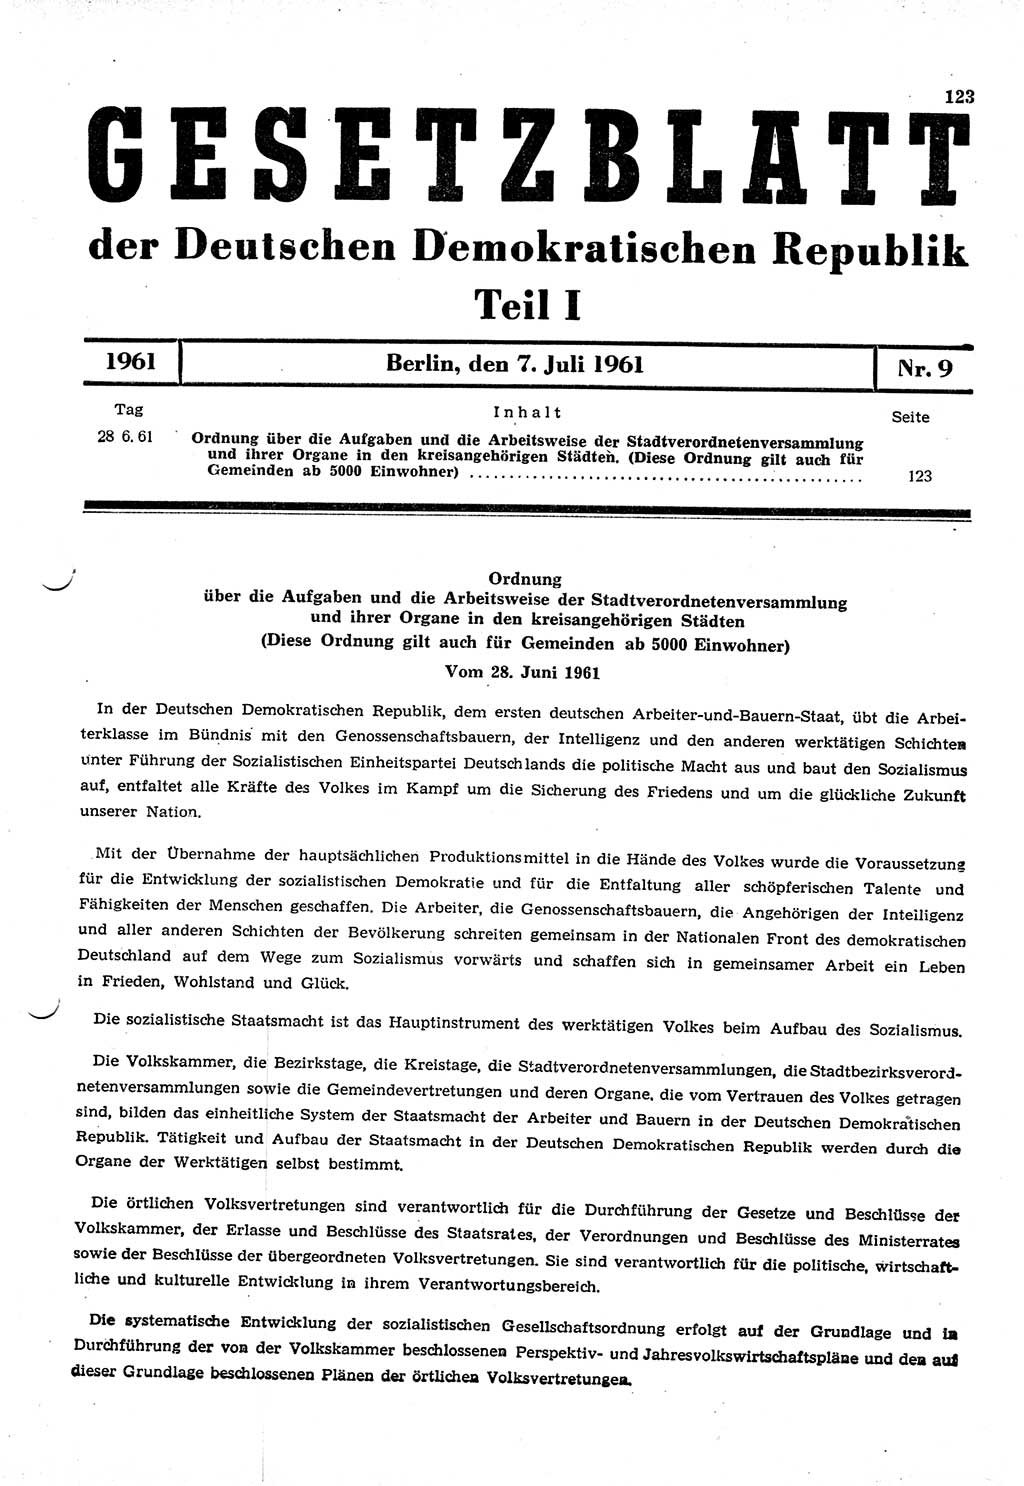 Gesetzblatt (GBl.) der Deutschen Demokratischen Republik (DDR) Teil Ⅰ 1961, Seite 123 (GBl. DDR Ⅰ 1961, S. 123)